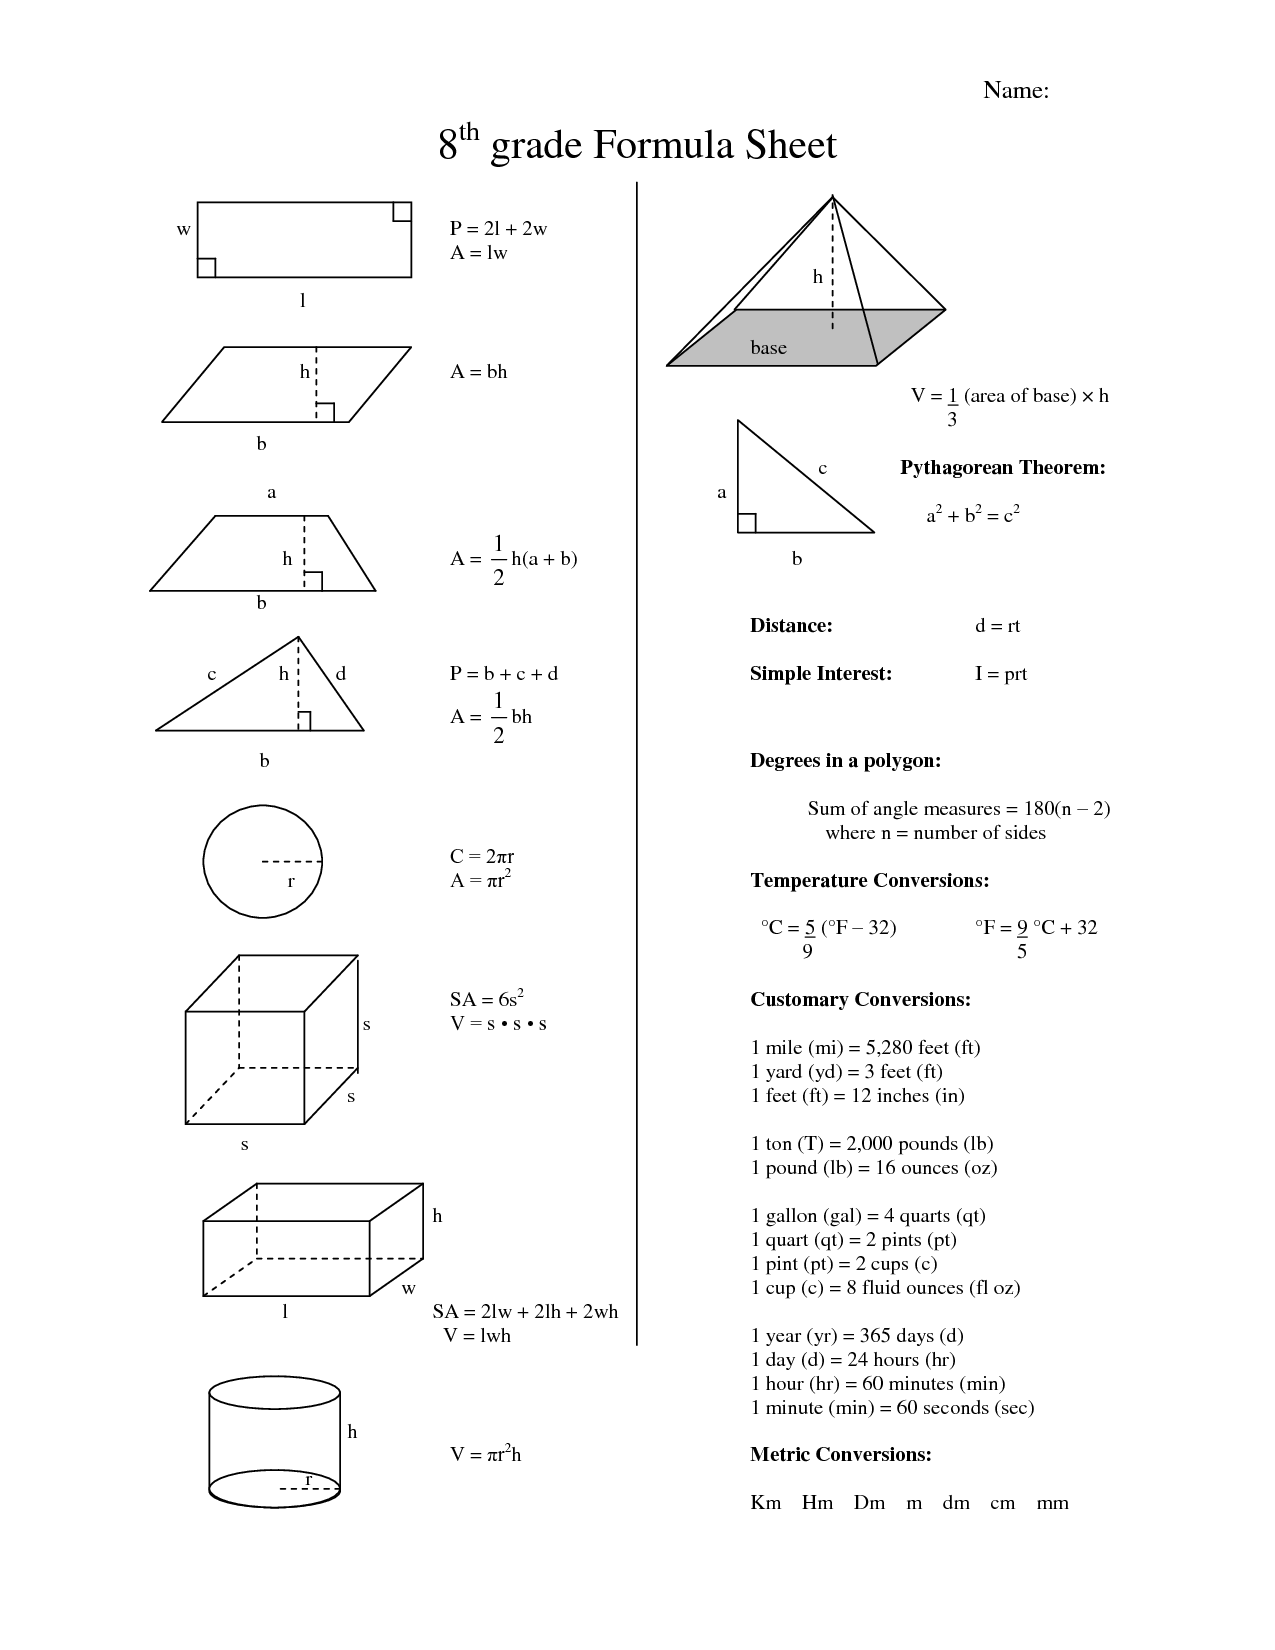 8th Grade Math Formula Sheet Image